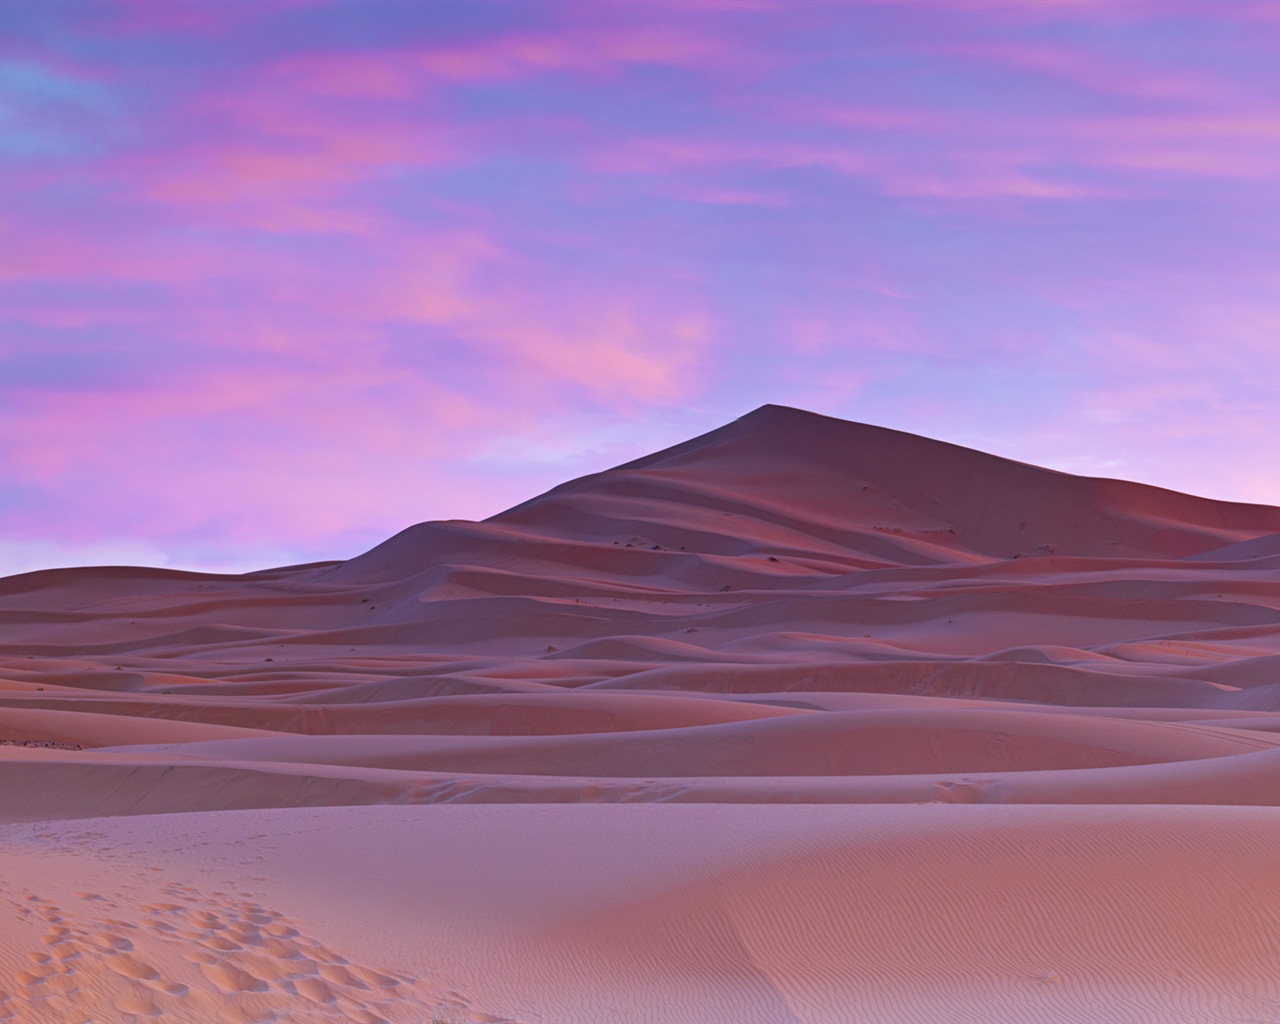 Les déserts chauds et arides, de Windows 8 fonds d'écran widescreen panoramique #1 - 1280x1024